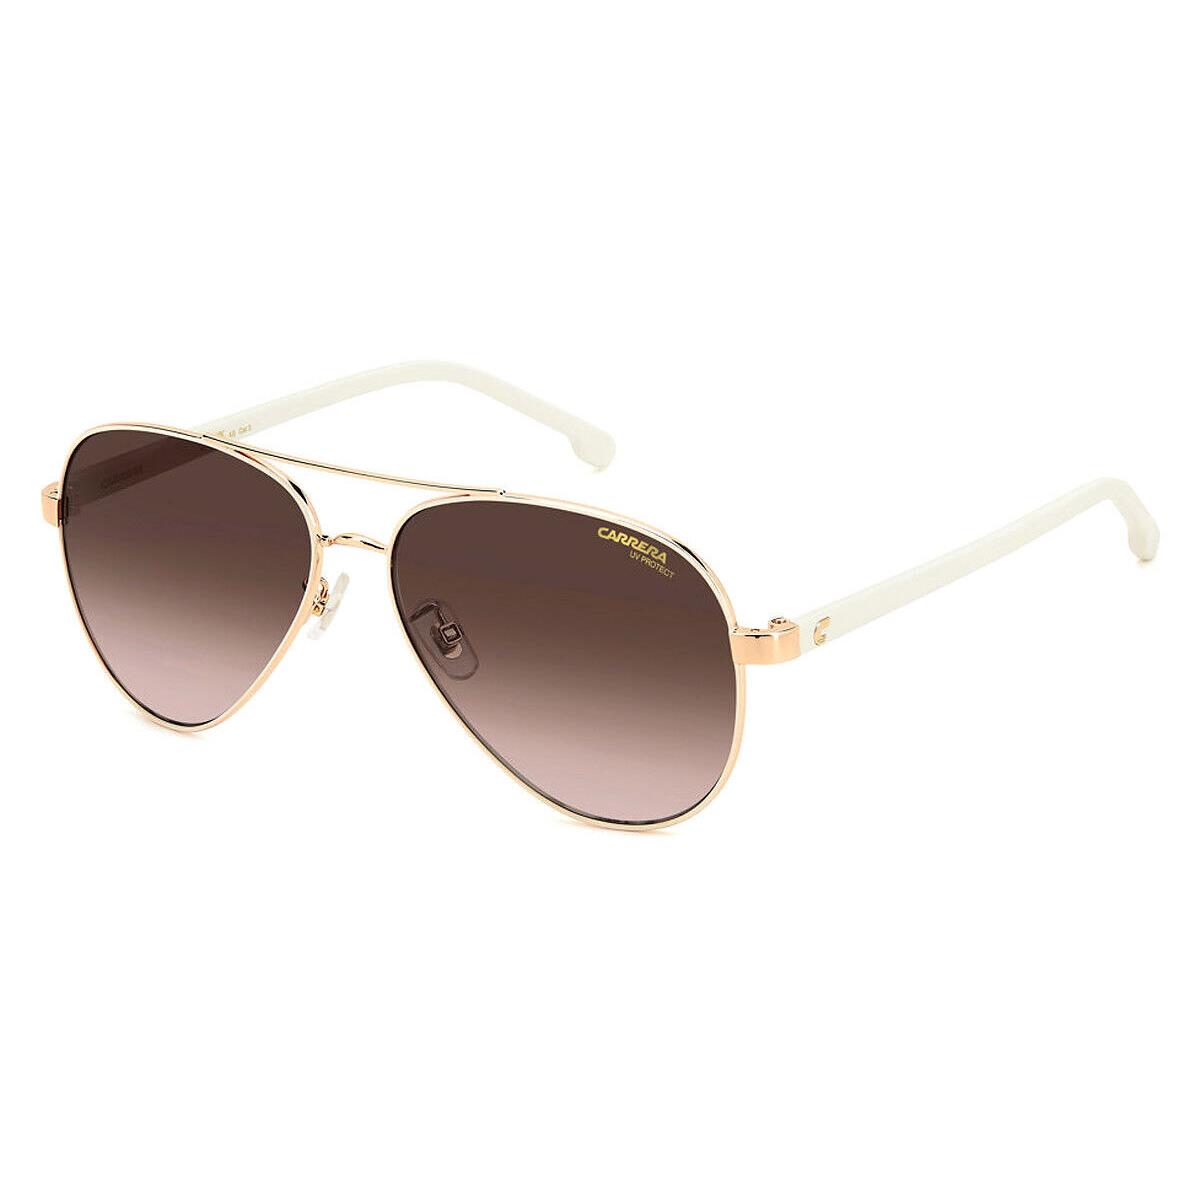 Carrera Car Sunglasses White Copper Gold / Brown Gradient